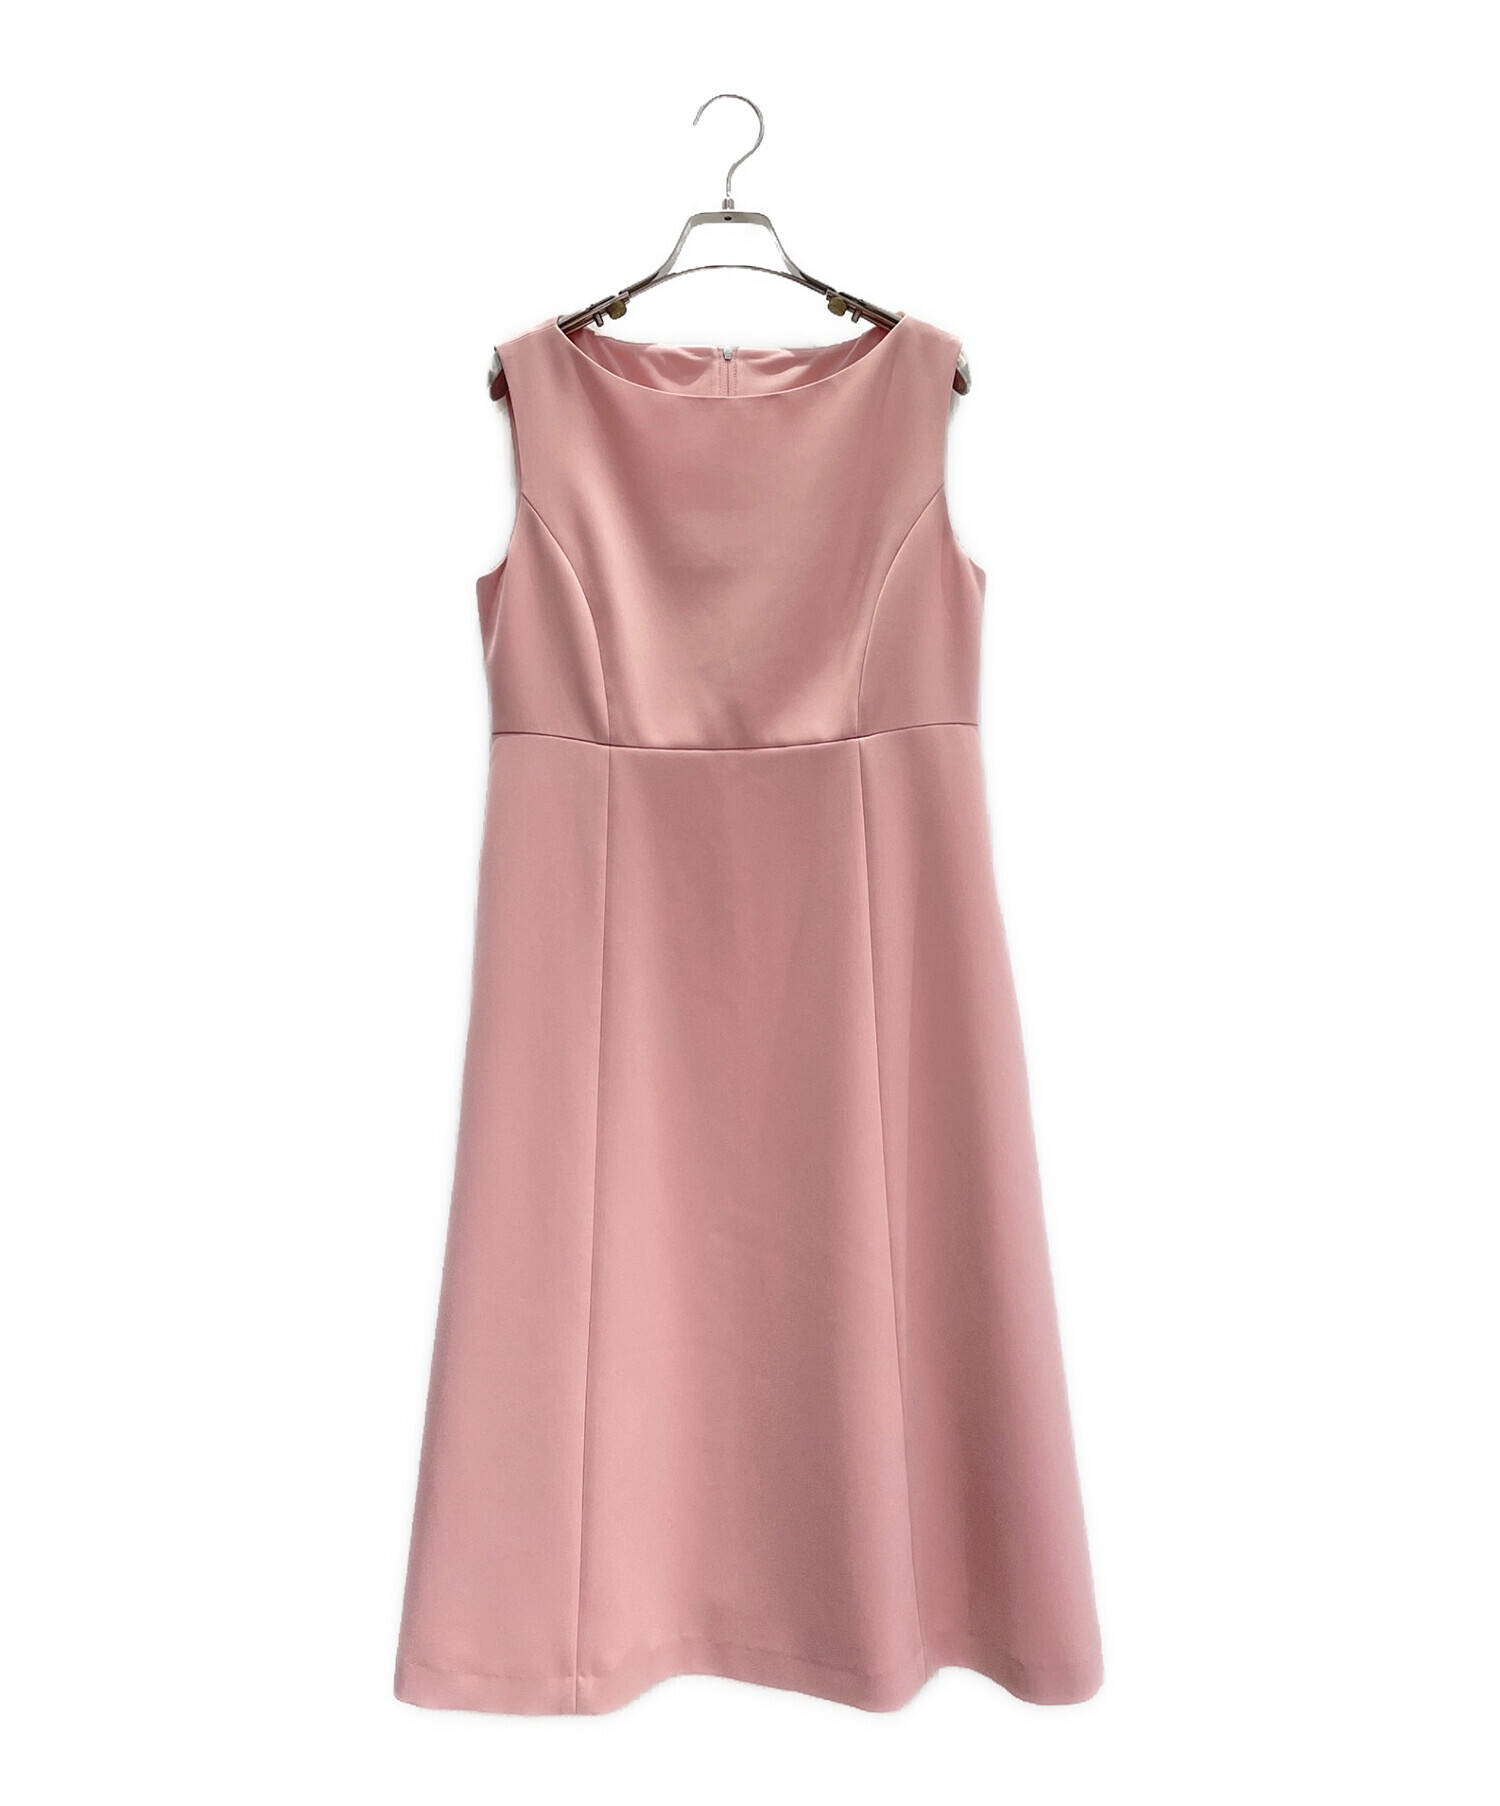 FOXEY NEWYORK (フォクシーニューヨーク) Park Avenue Dress サクラピンク サイズ:40